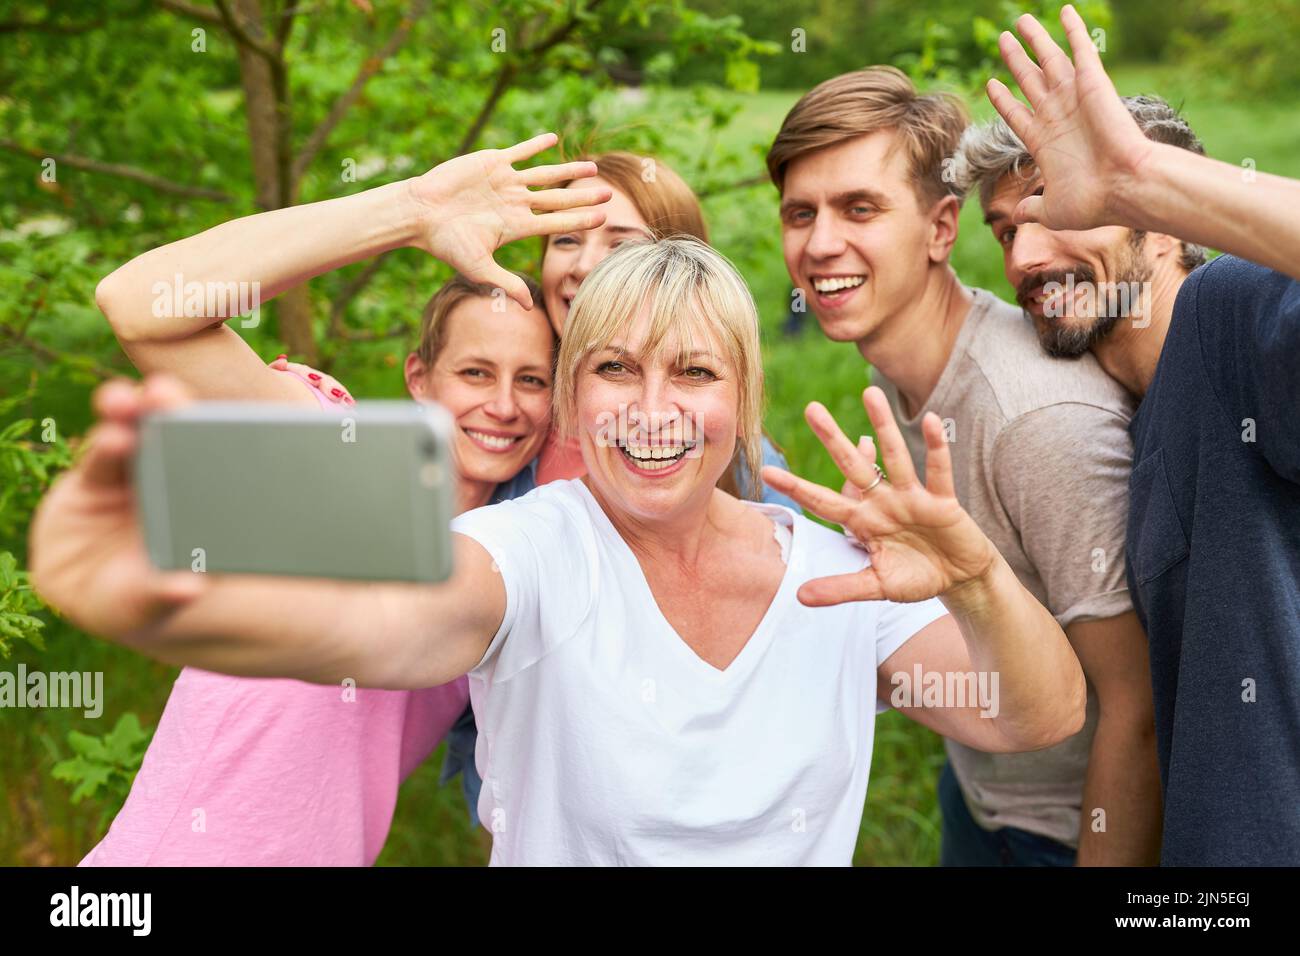 Grupo de amigos o familia diviértase tomando selfie con su smartphone de vacaciones Foto de stock